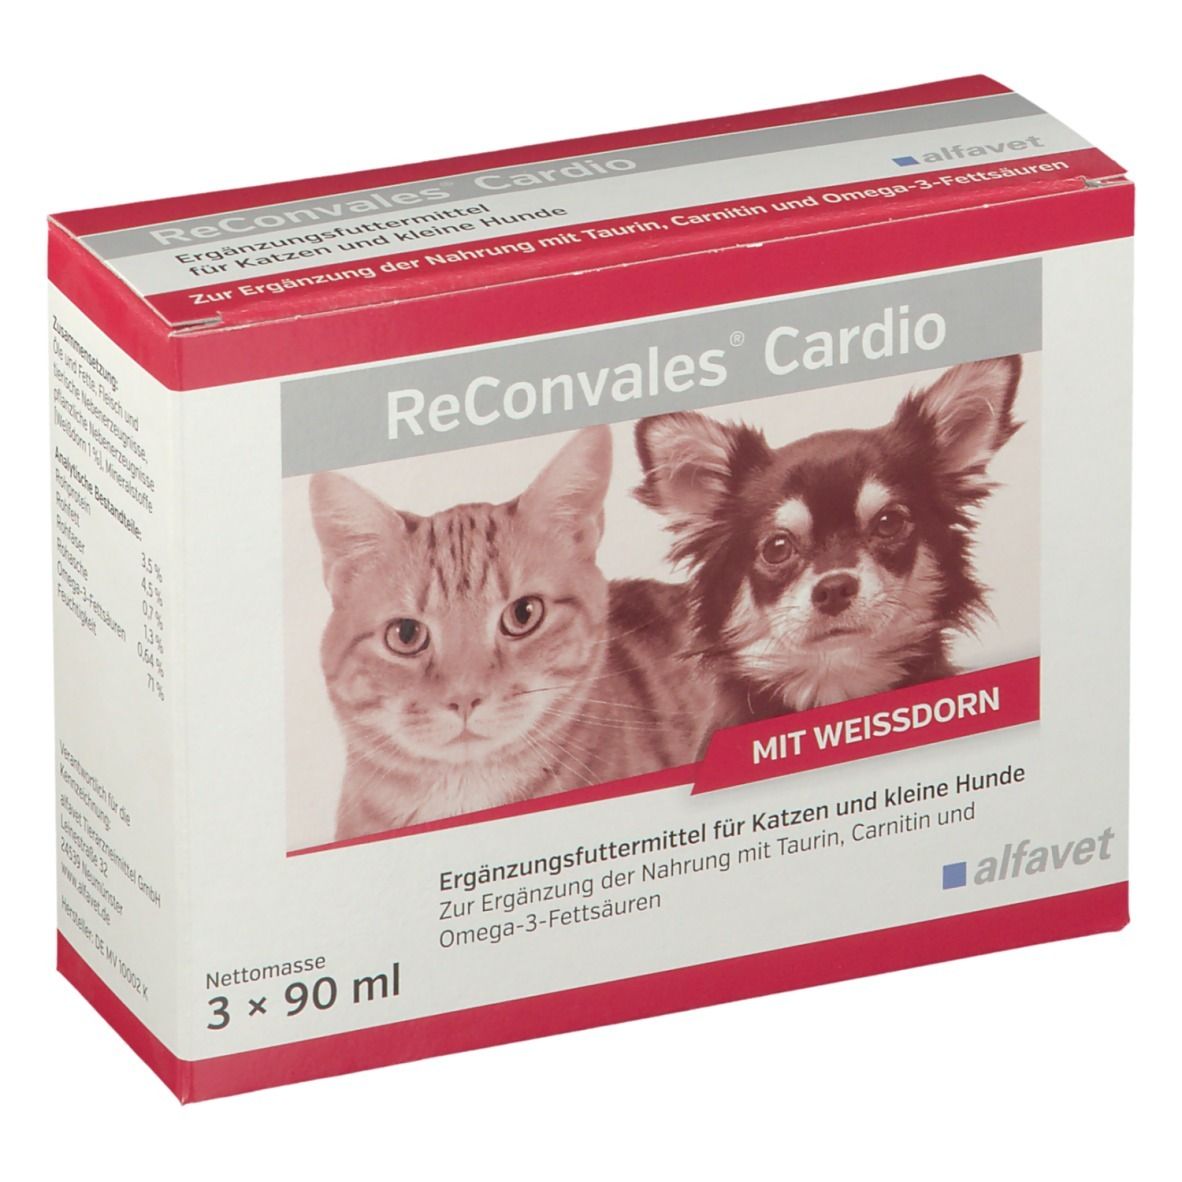 Image of ReConvales® Cardio für Hunde und Katzen